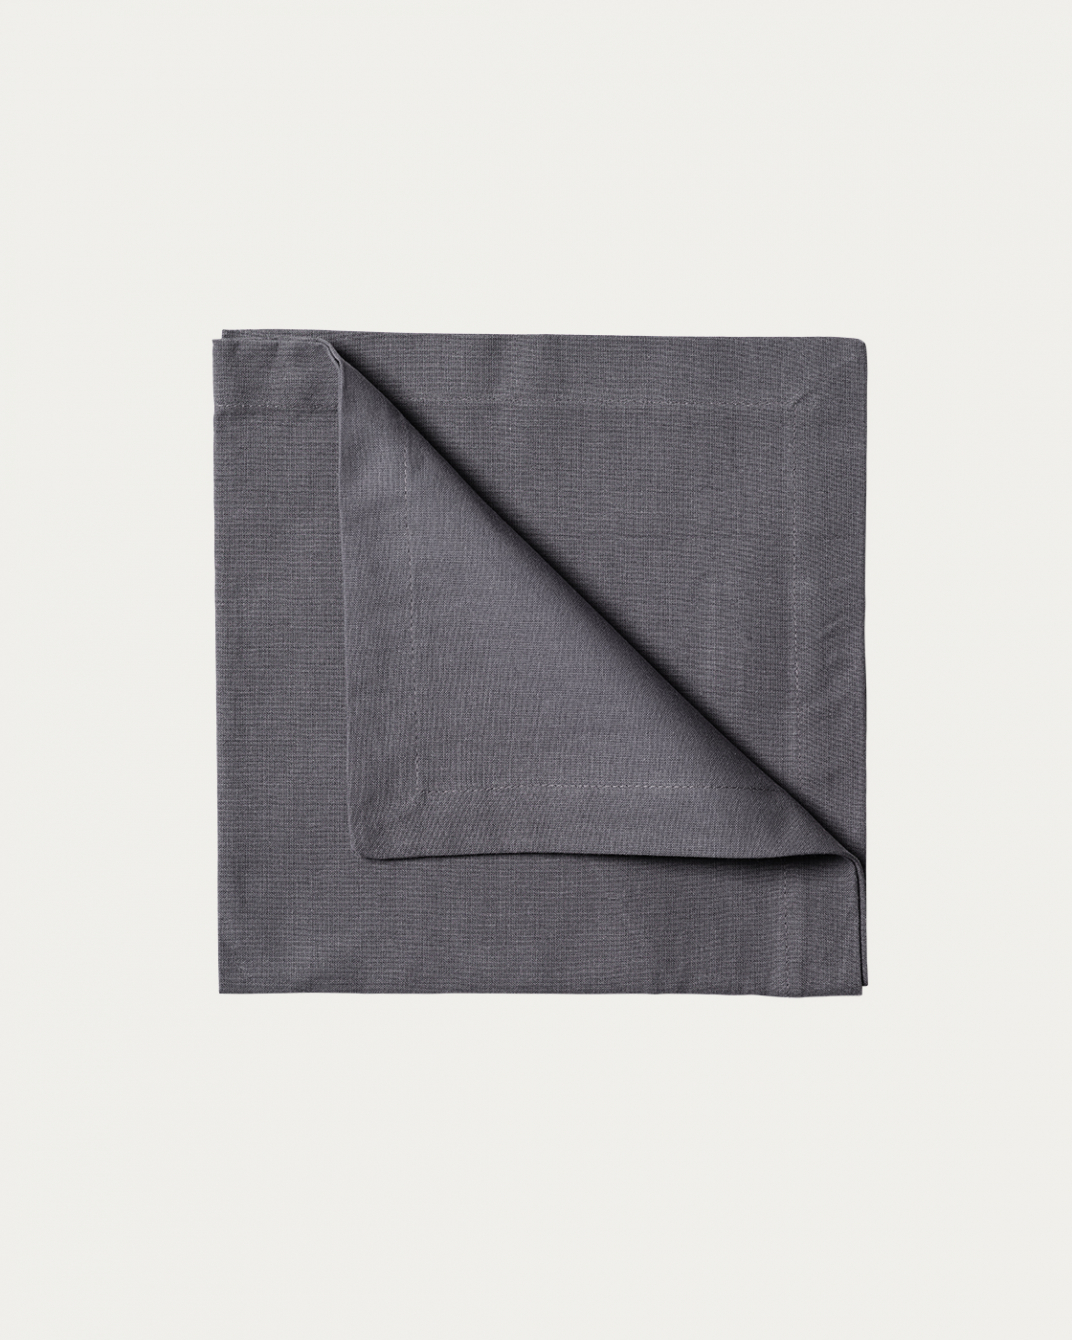 Produktbild granitgrå ROBERT servett av mjuk bomull från LINUM DESIGN. Storlek 45x45 cm och säljs i 4 pack.